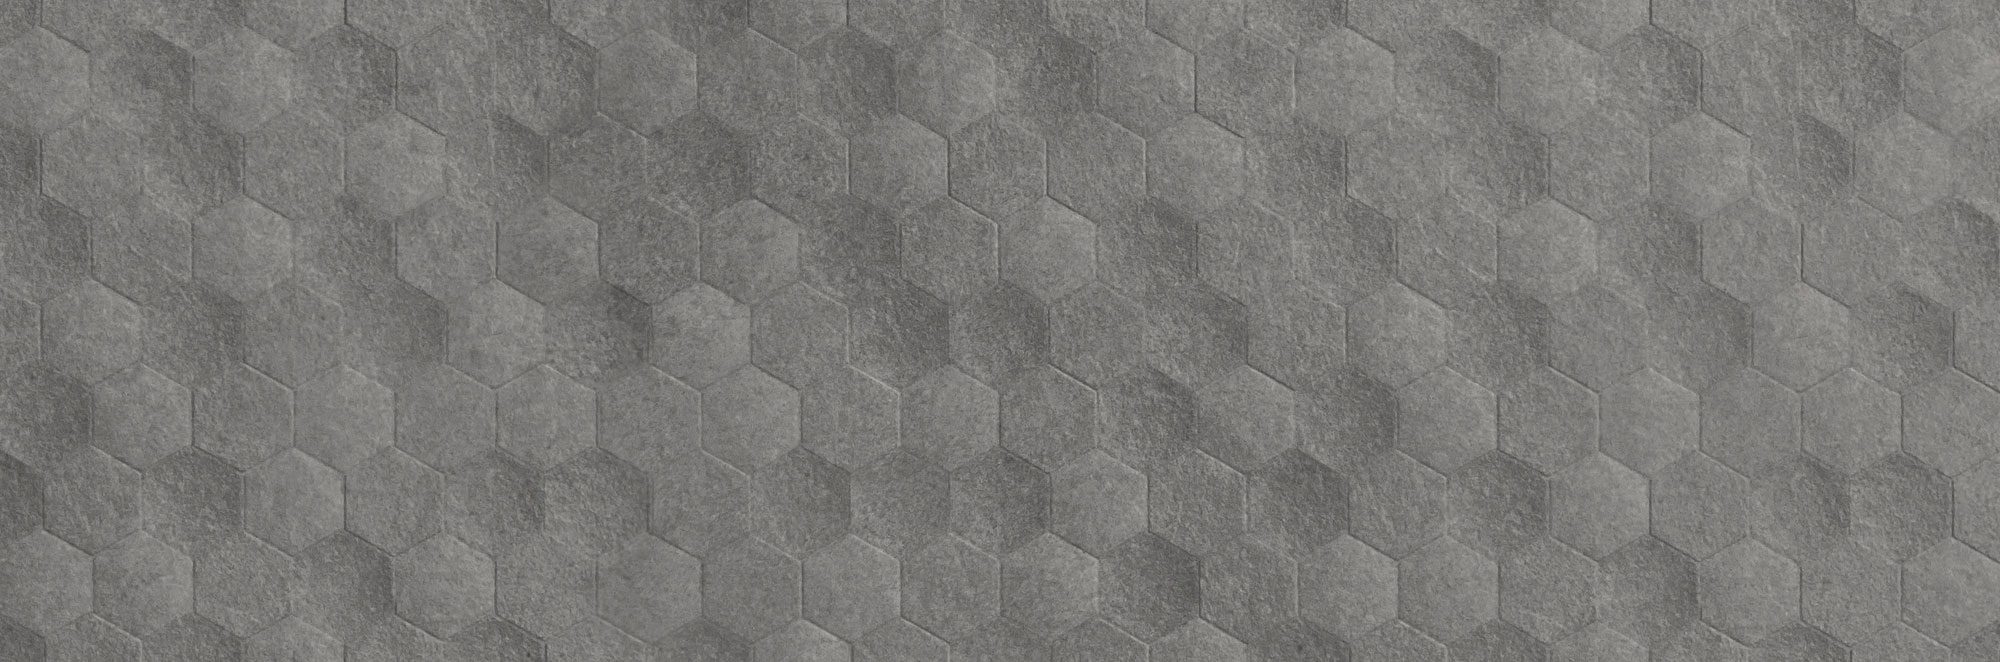 Band Grey Hexagon